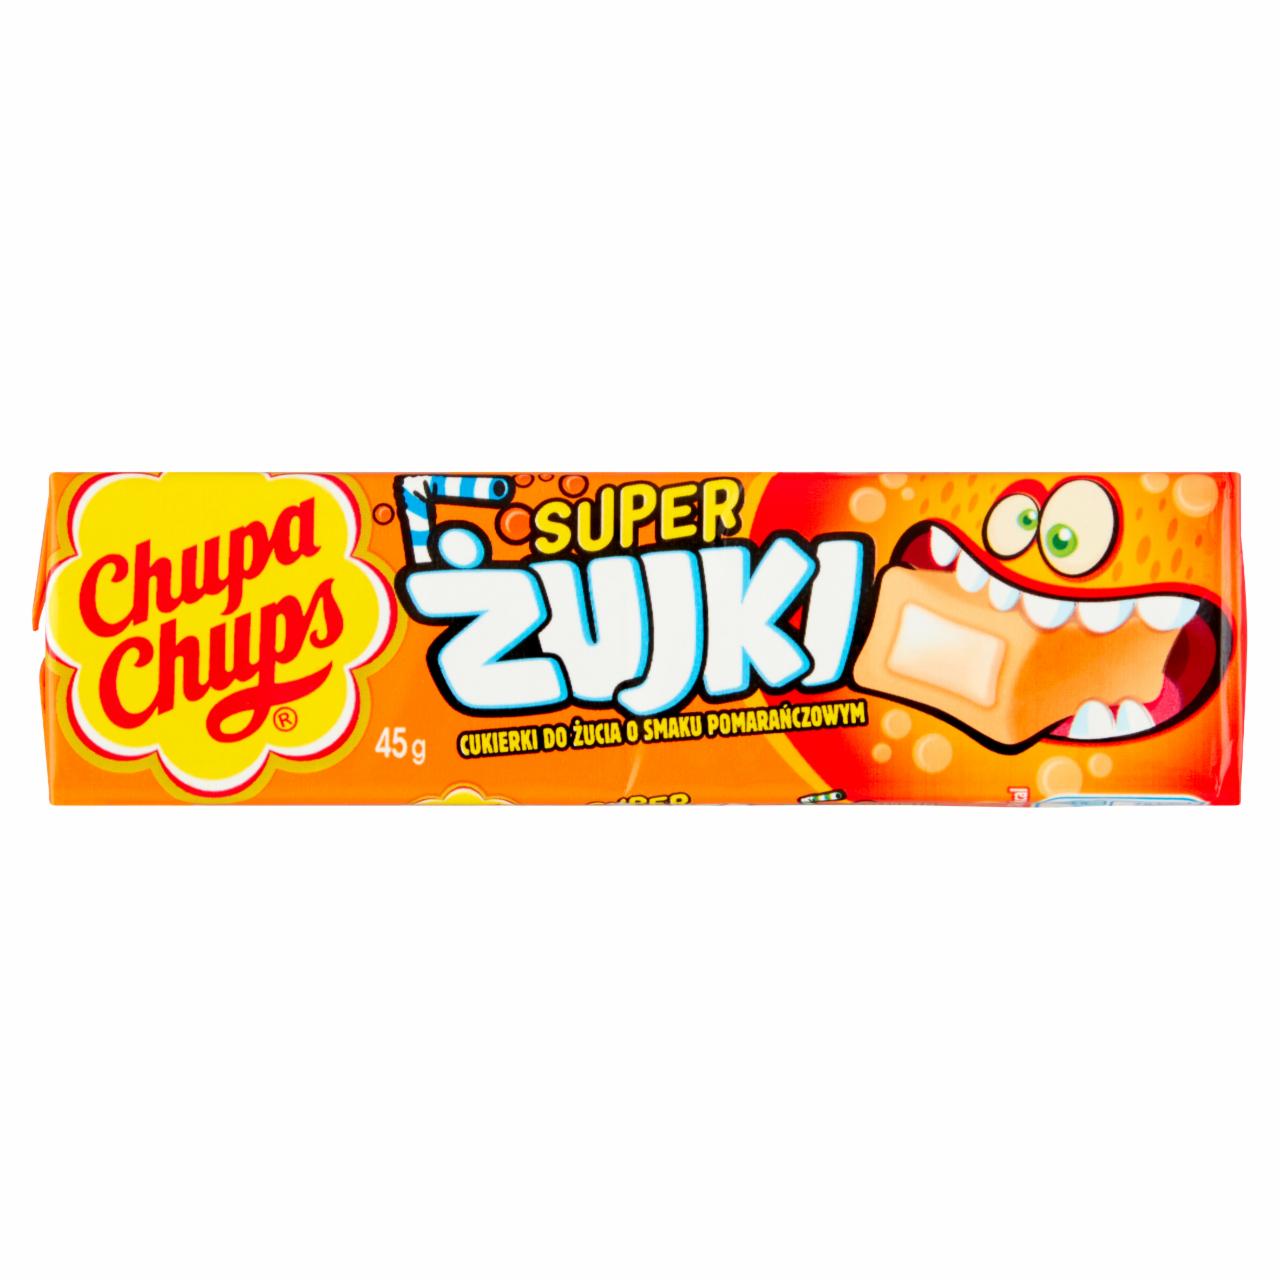 Zdjęcia - Chupa Chups Super żujki Cukierki do żucia o smaku pomarańczowym 45 g